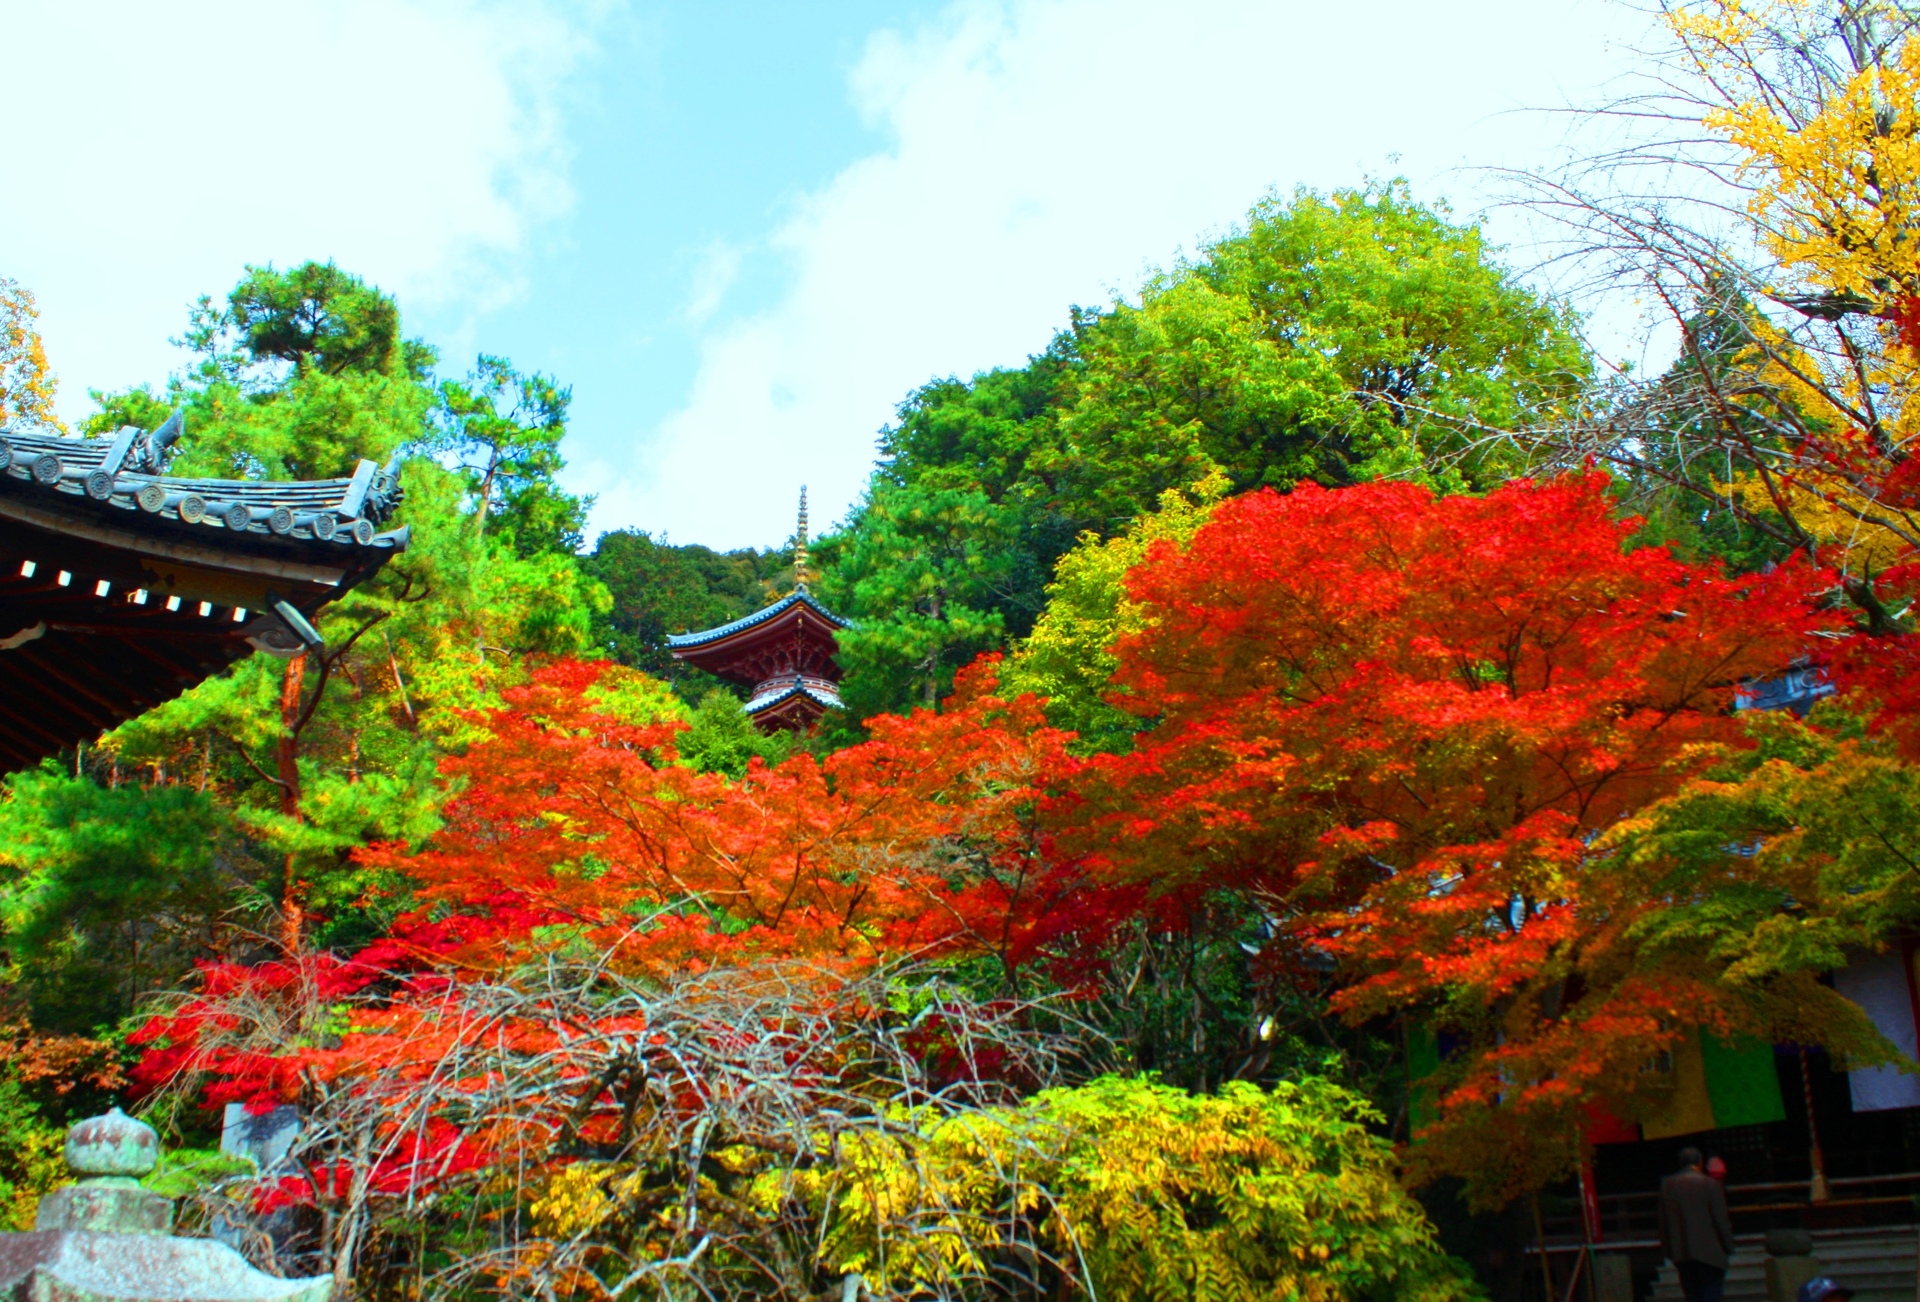 日本の風景 京都紅葉 壁紙19x1302 壁紙館